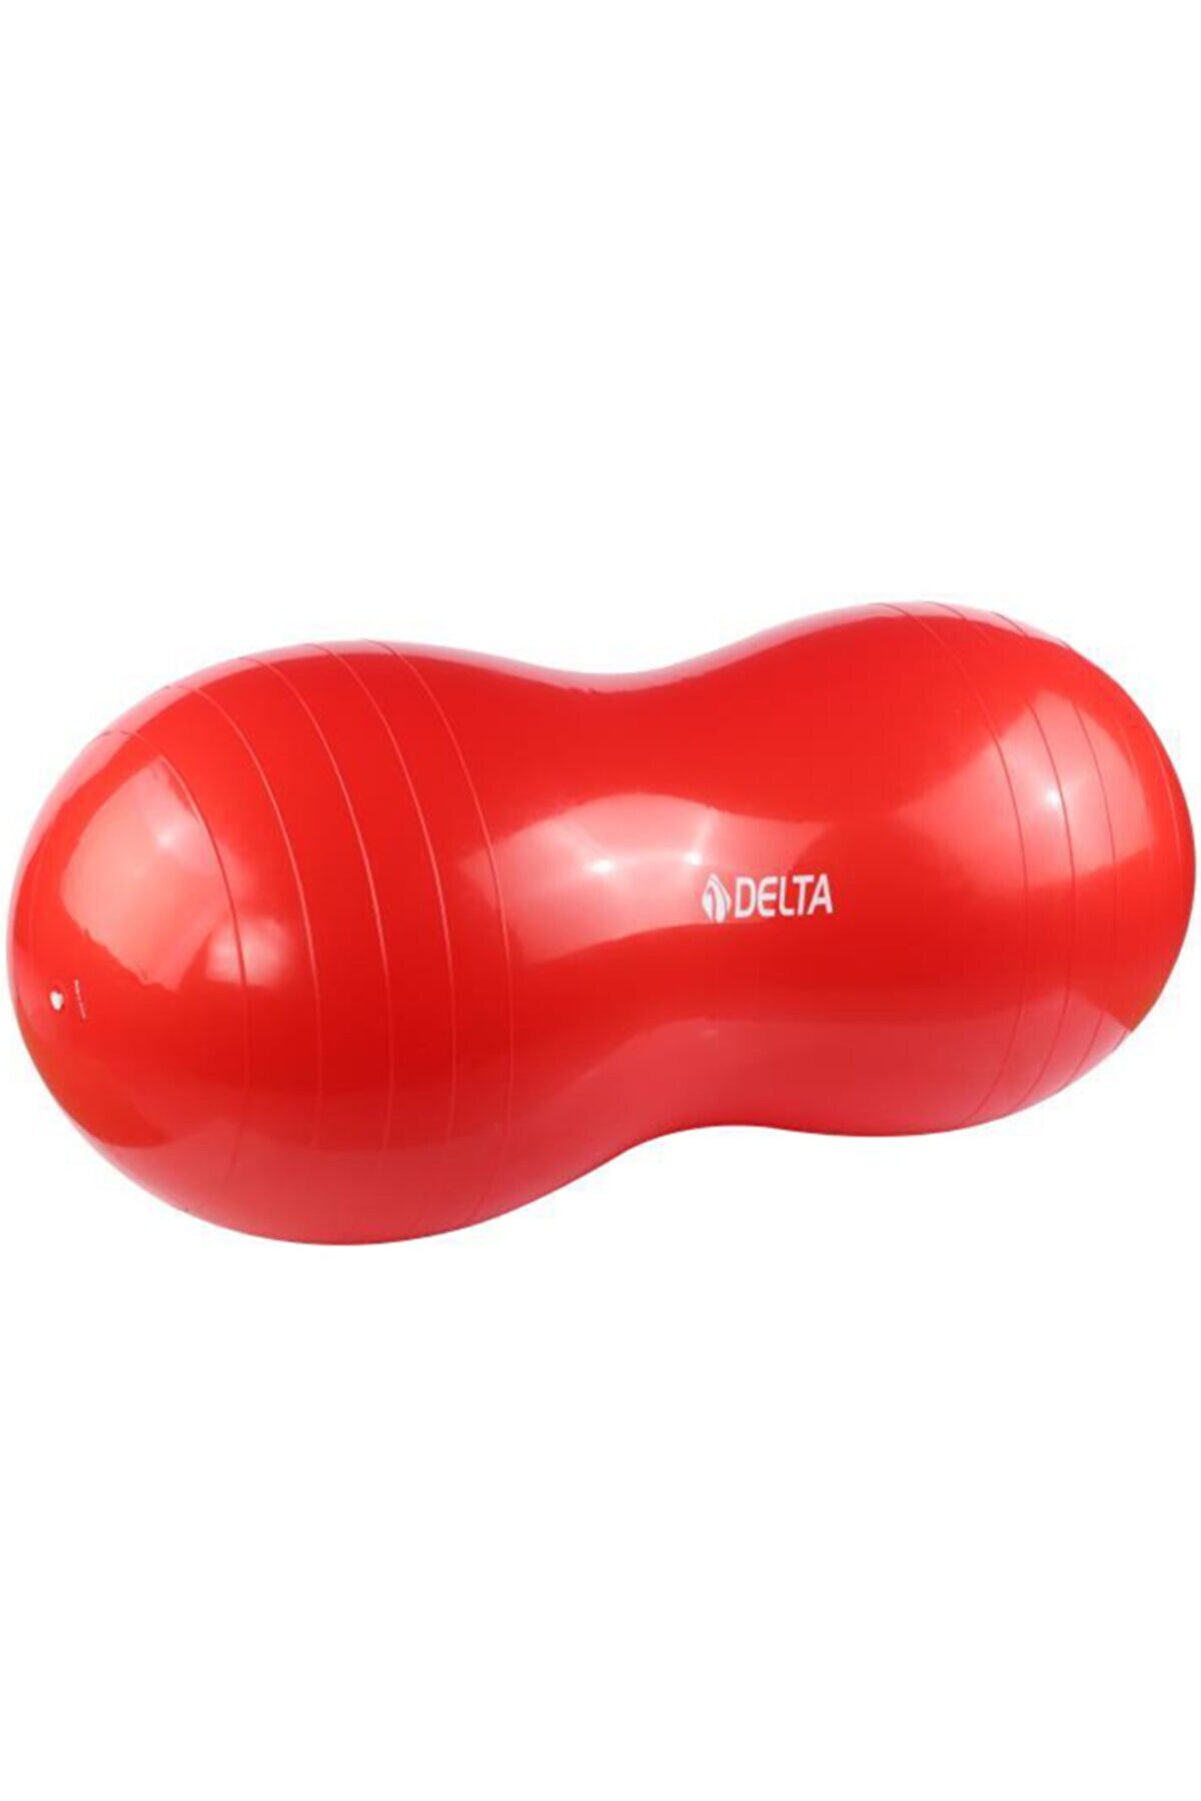 Delta Fıstık Şeklinde 90 Cm X 45 Cm Kırmızı Pilates Topu